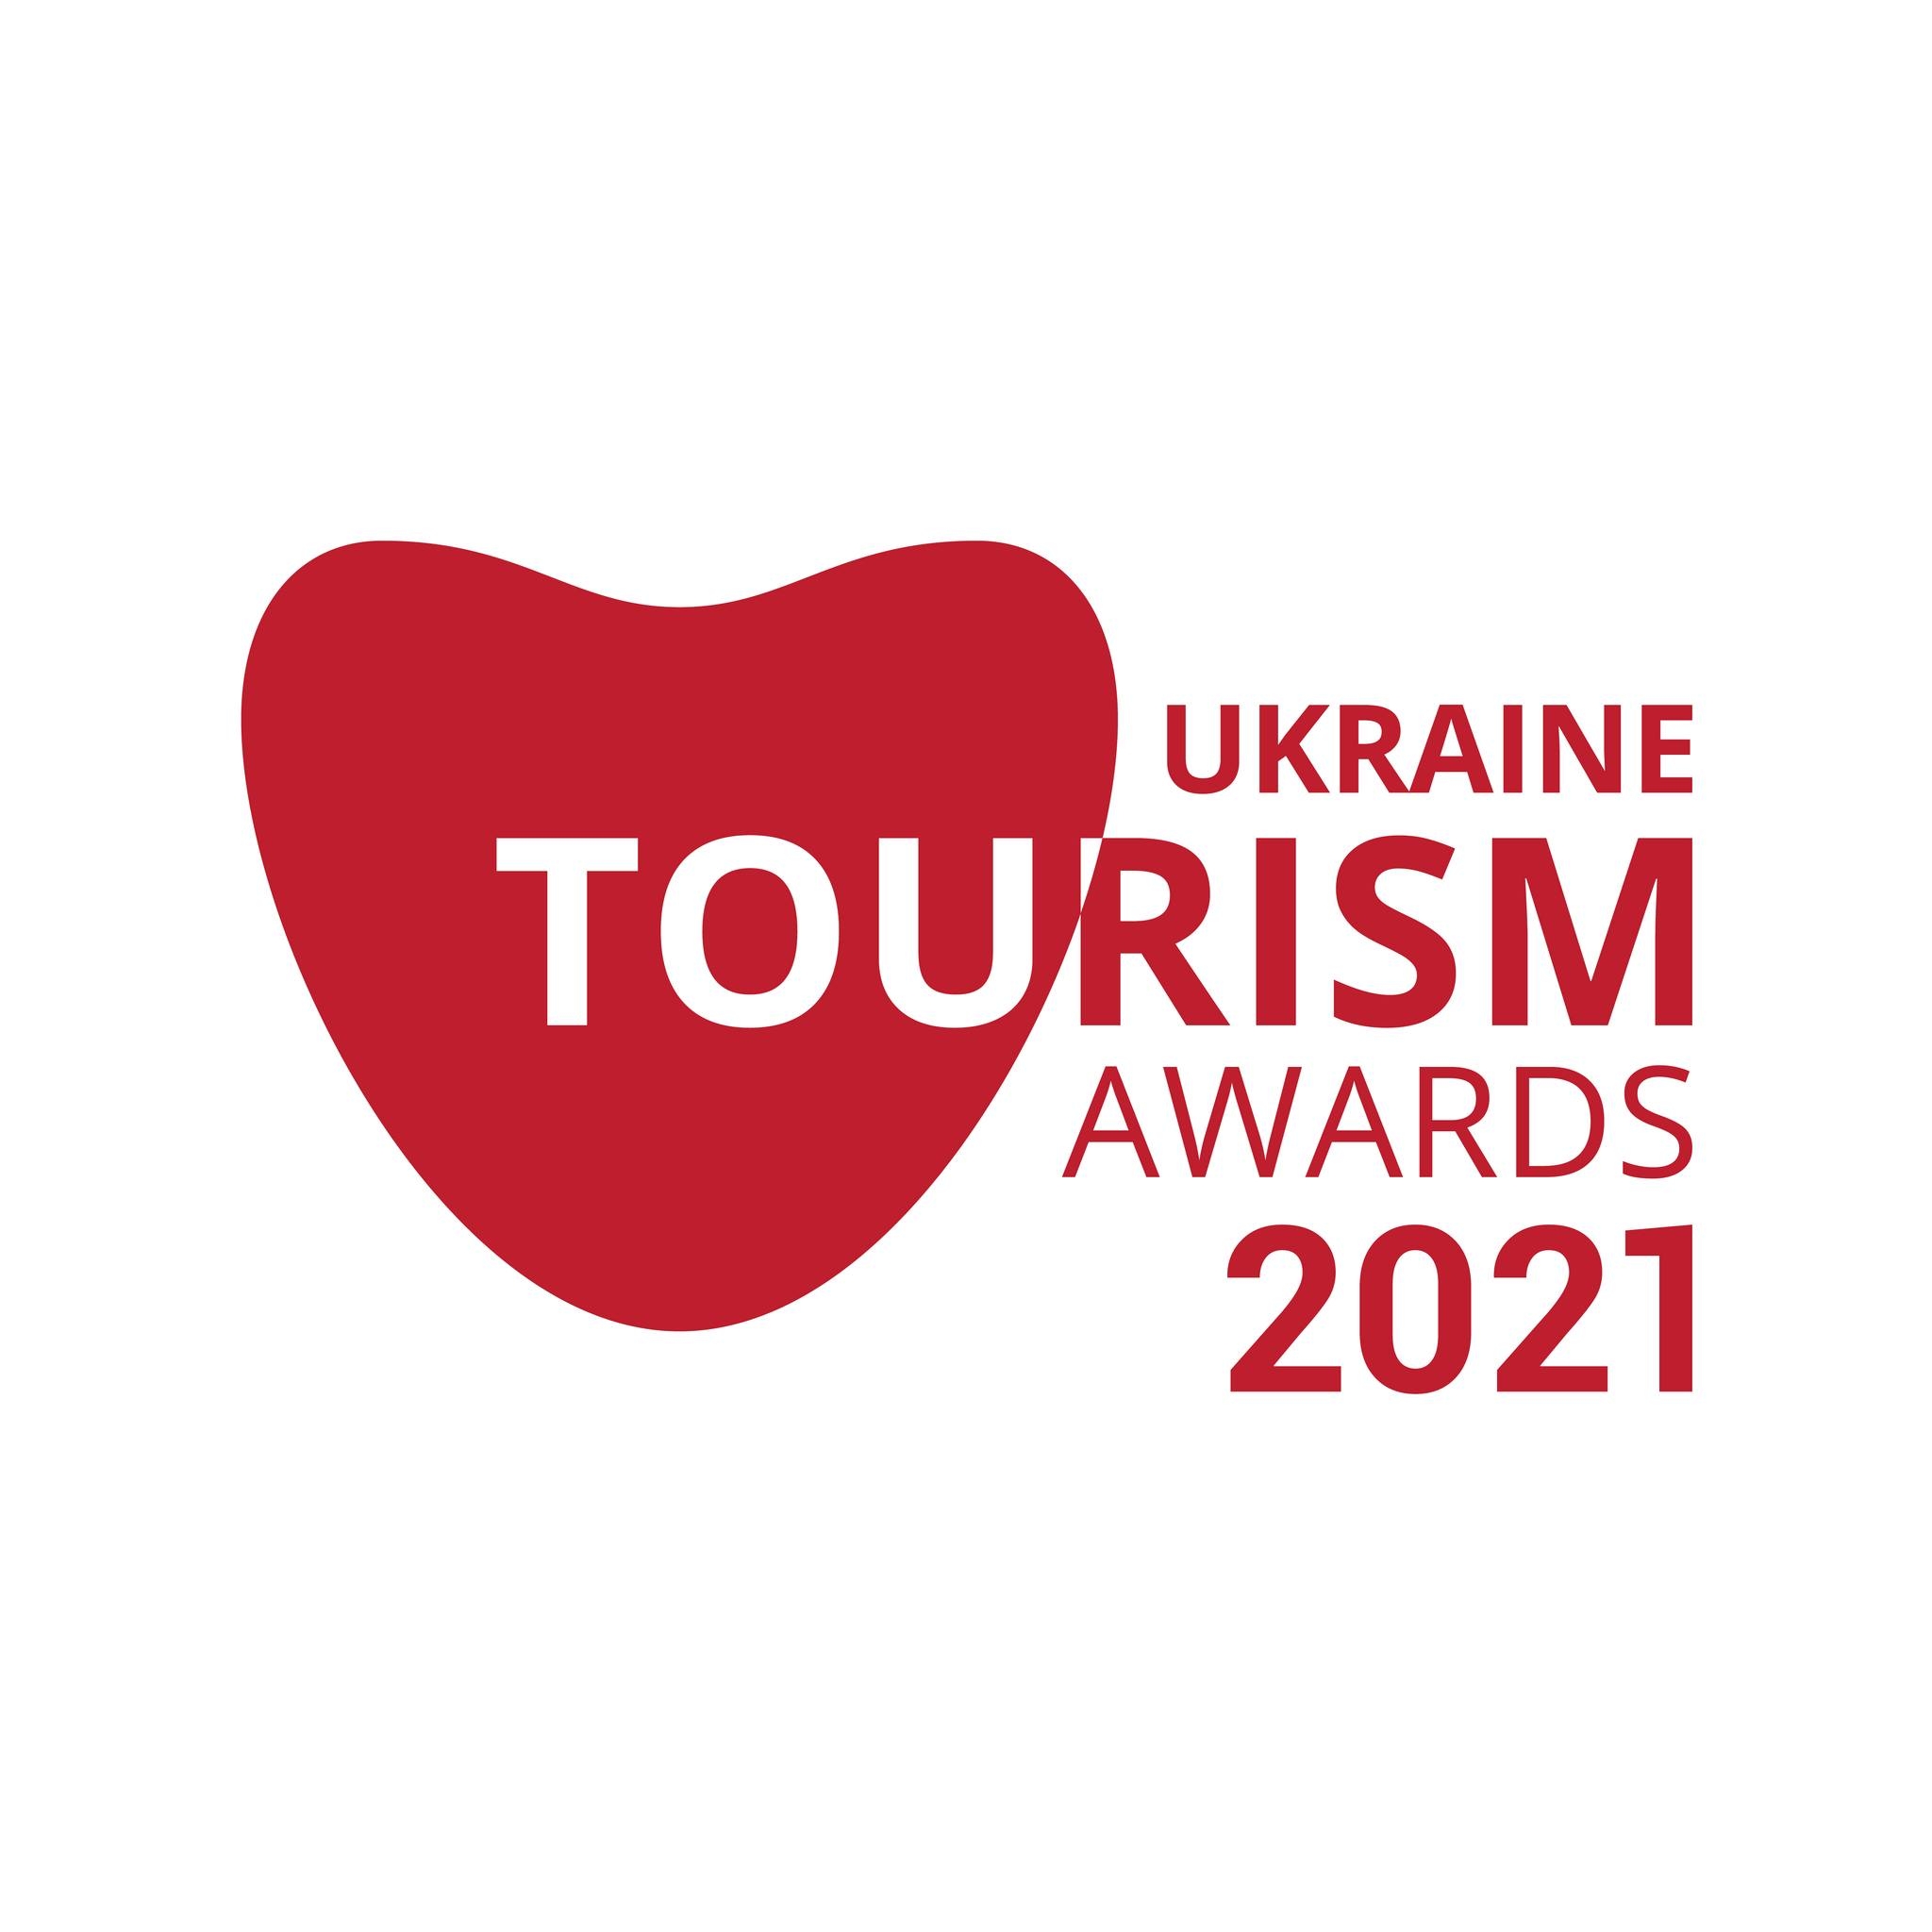 Маріуполь туристичне місто • Маріуполь номінований на шість премій "Ukraine Tourism Awards 2021".